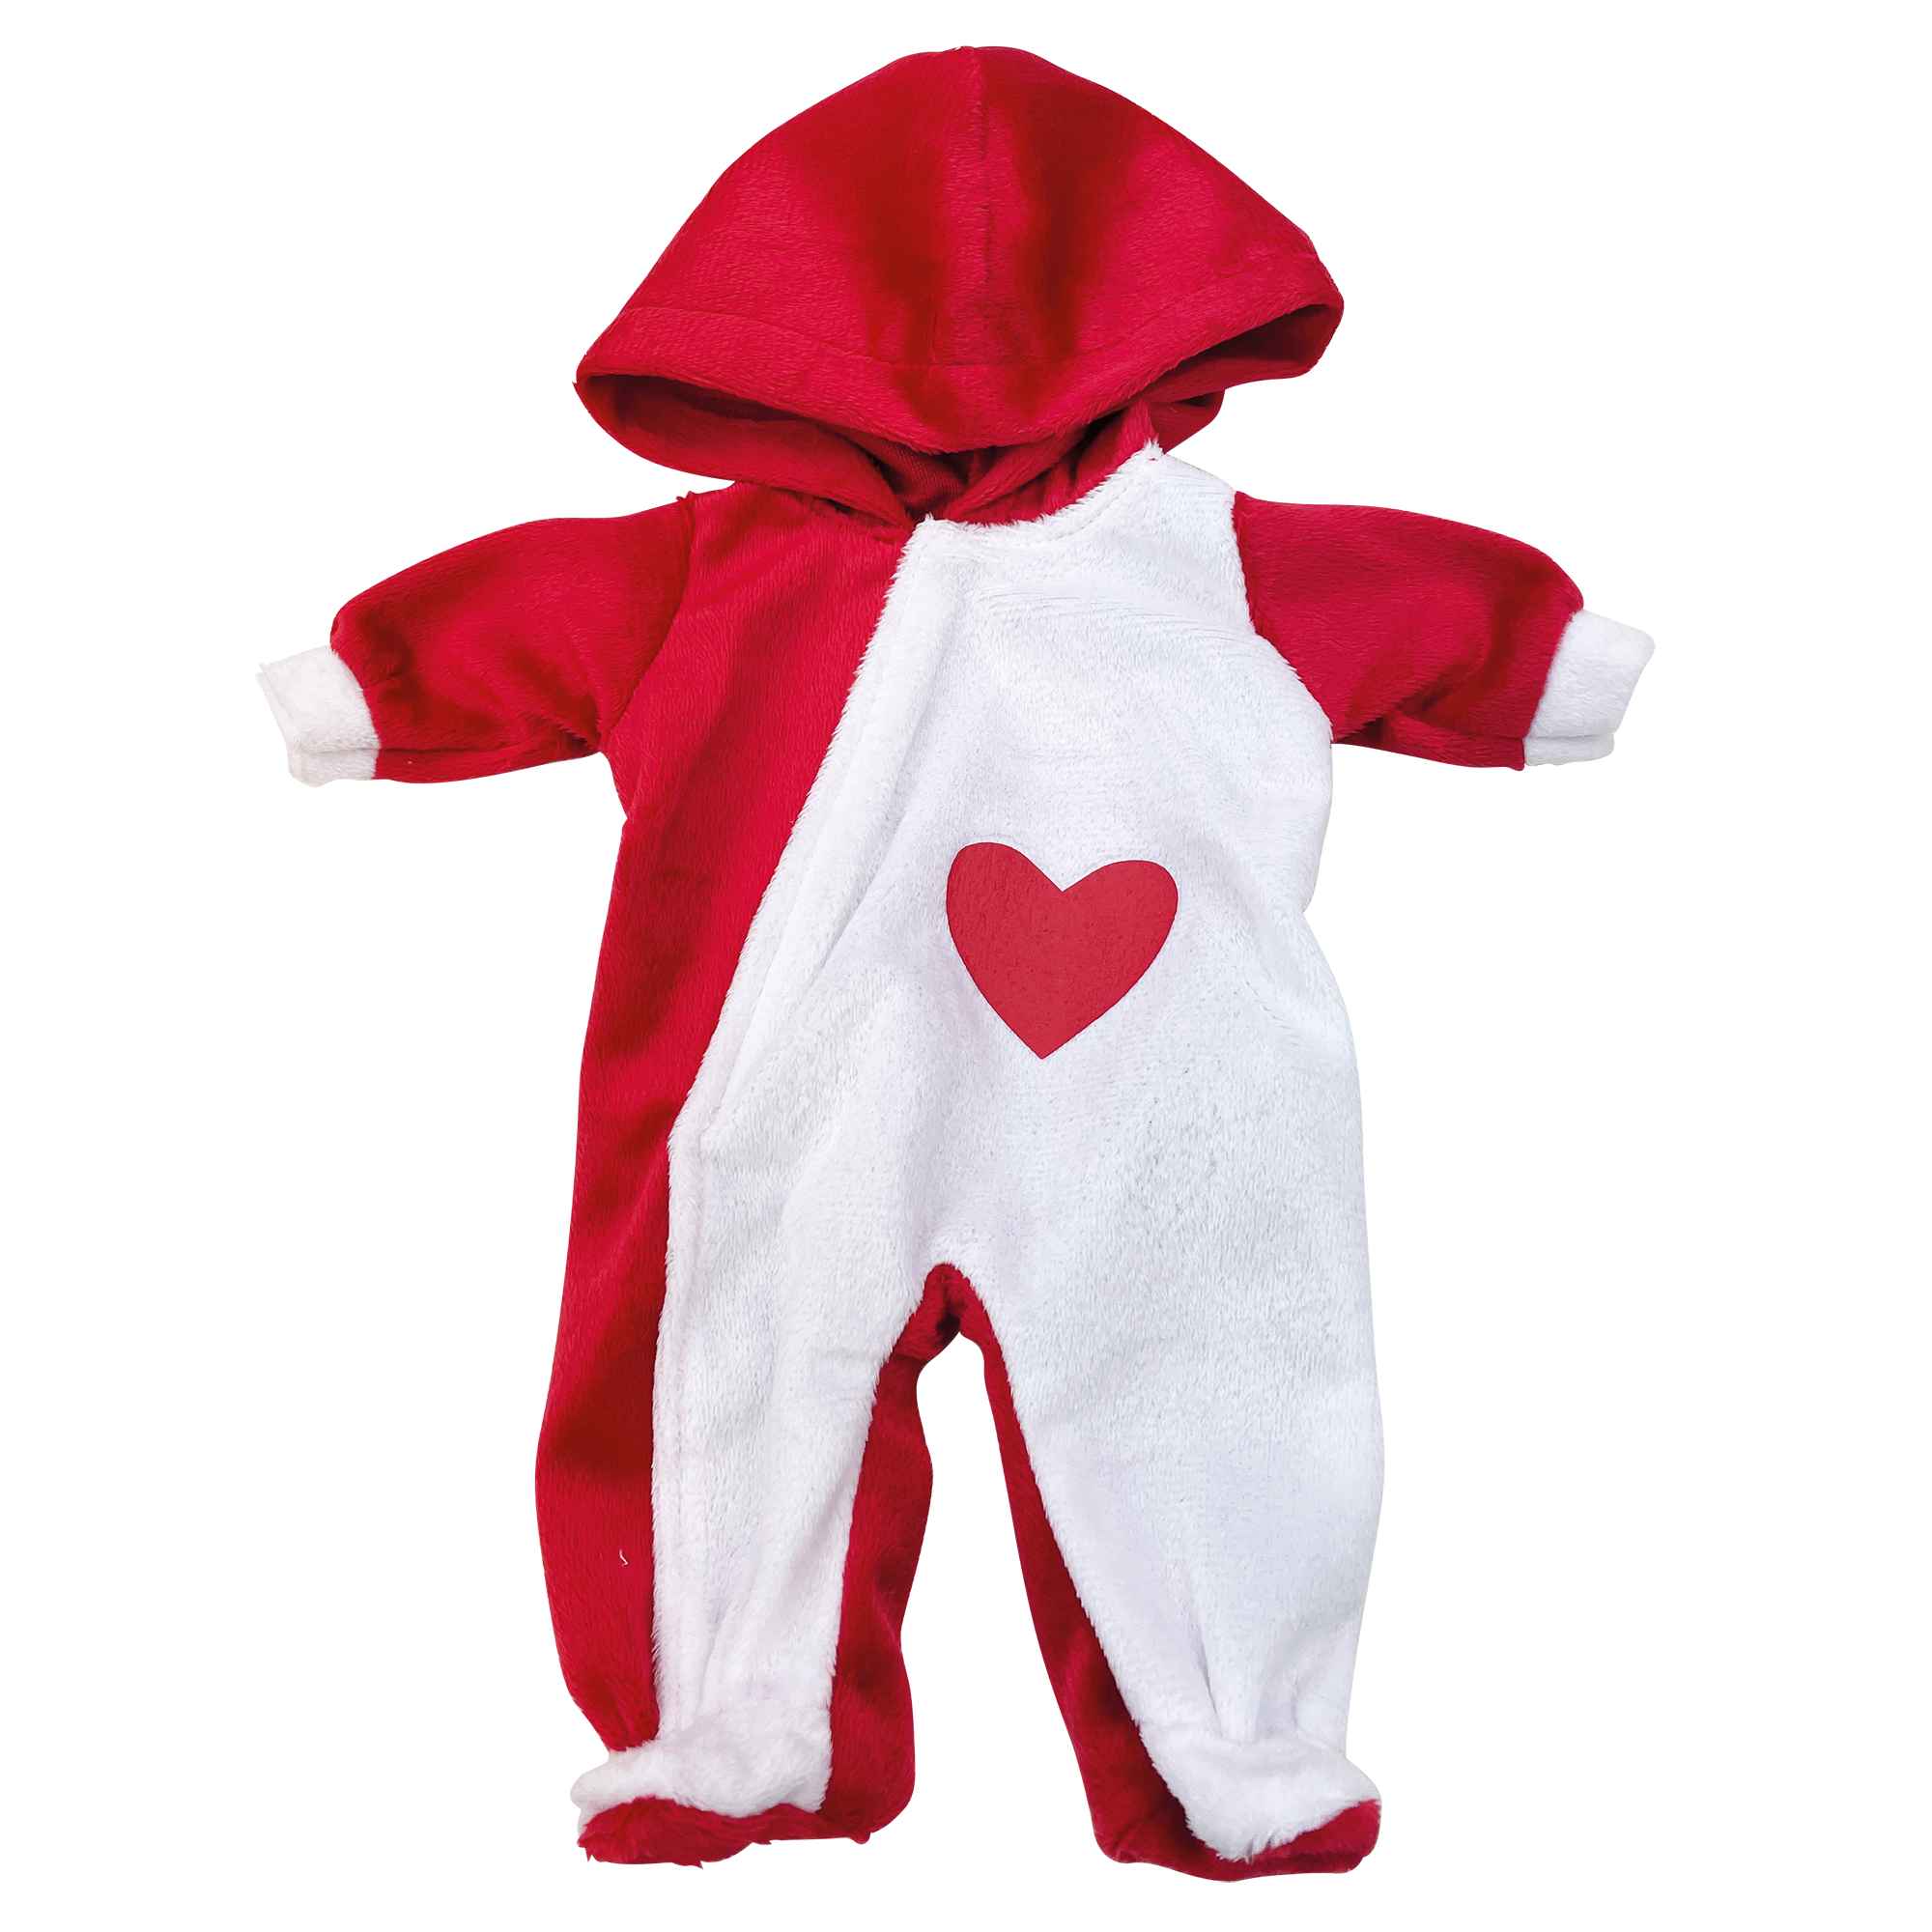 Love Bebé Ρούχα για Κούκλες Μωρά 30-33εκ. 6 Σχέδια PRG00605 - Love Bebé